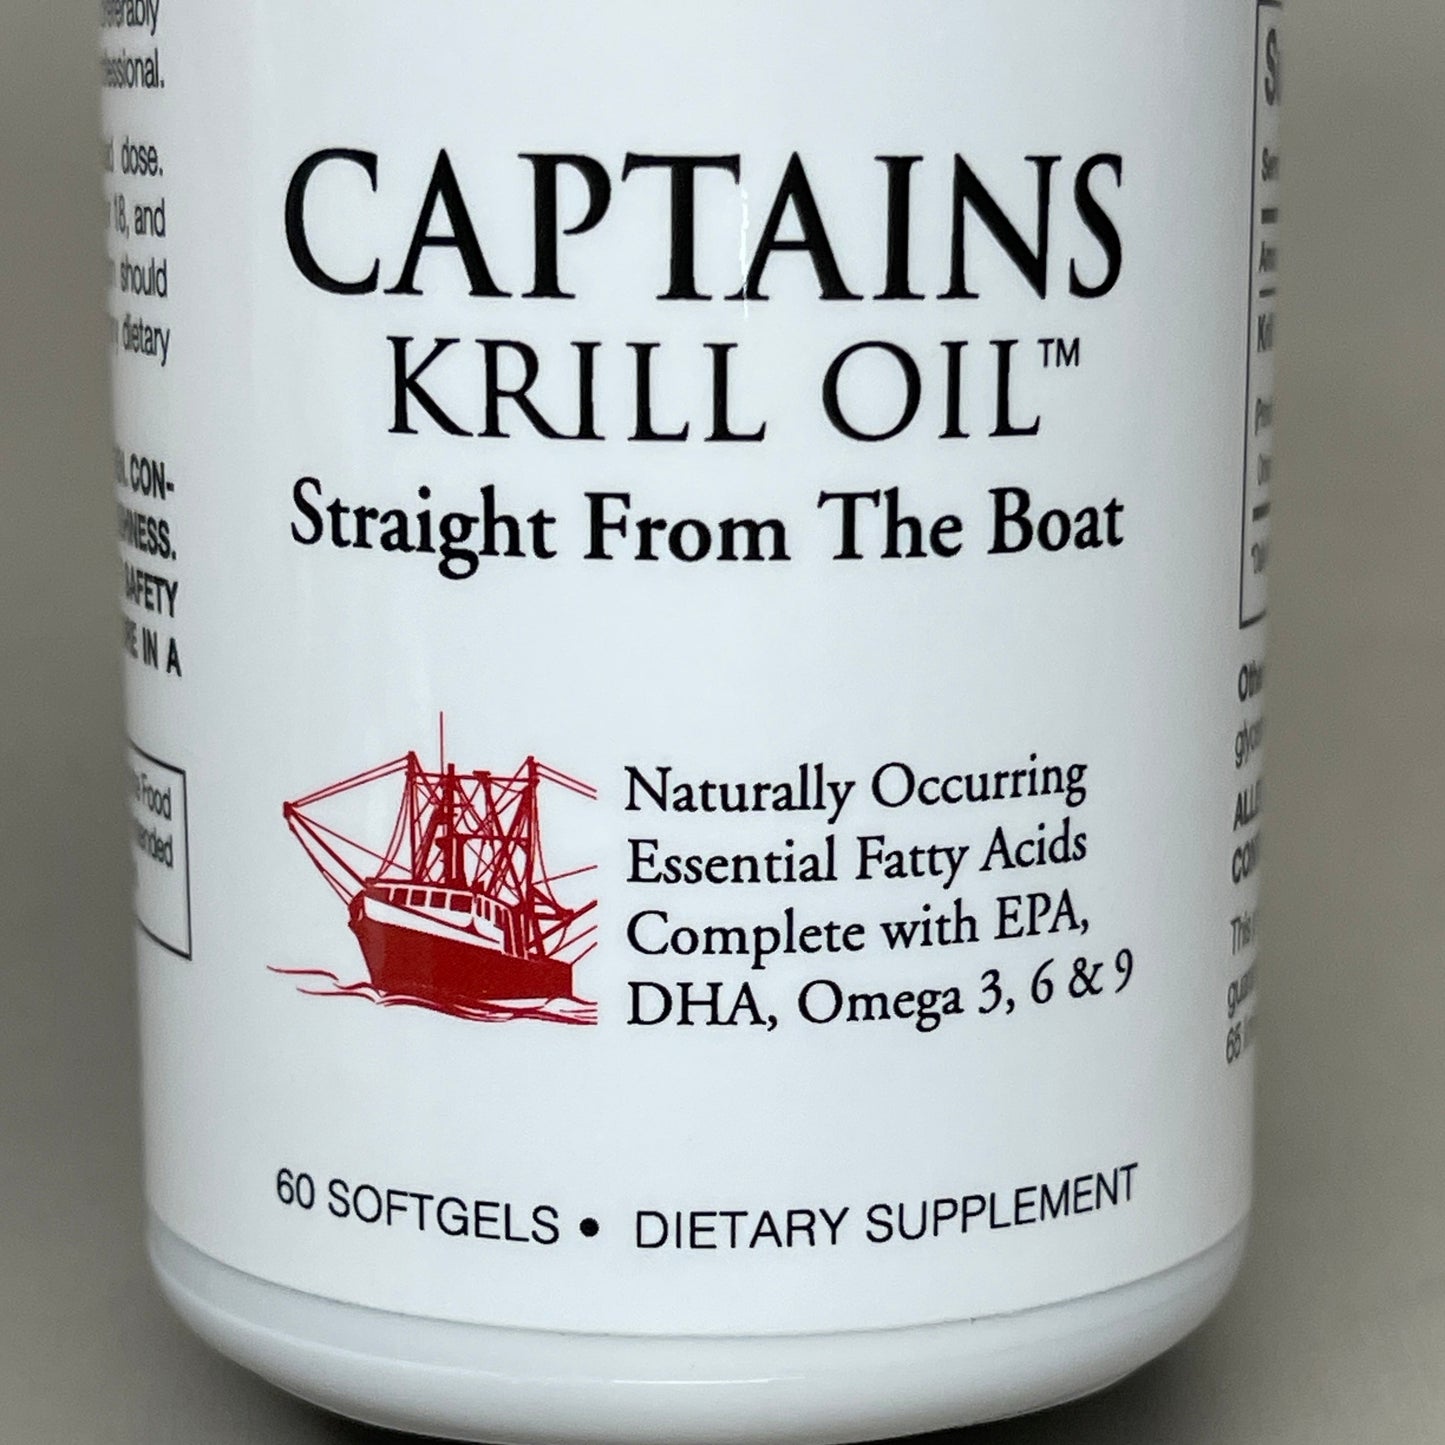 ZA@ CAPTAIN KRILLS 12 Bottles Krill Oil Dietary Supplement Omega 3, 6, 9 - 720 Softgels BB 11/23 (New)